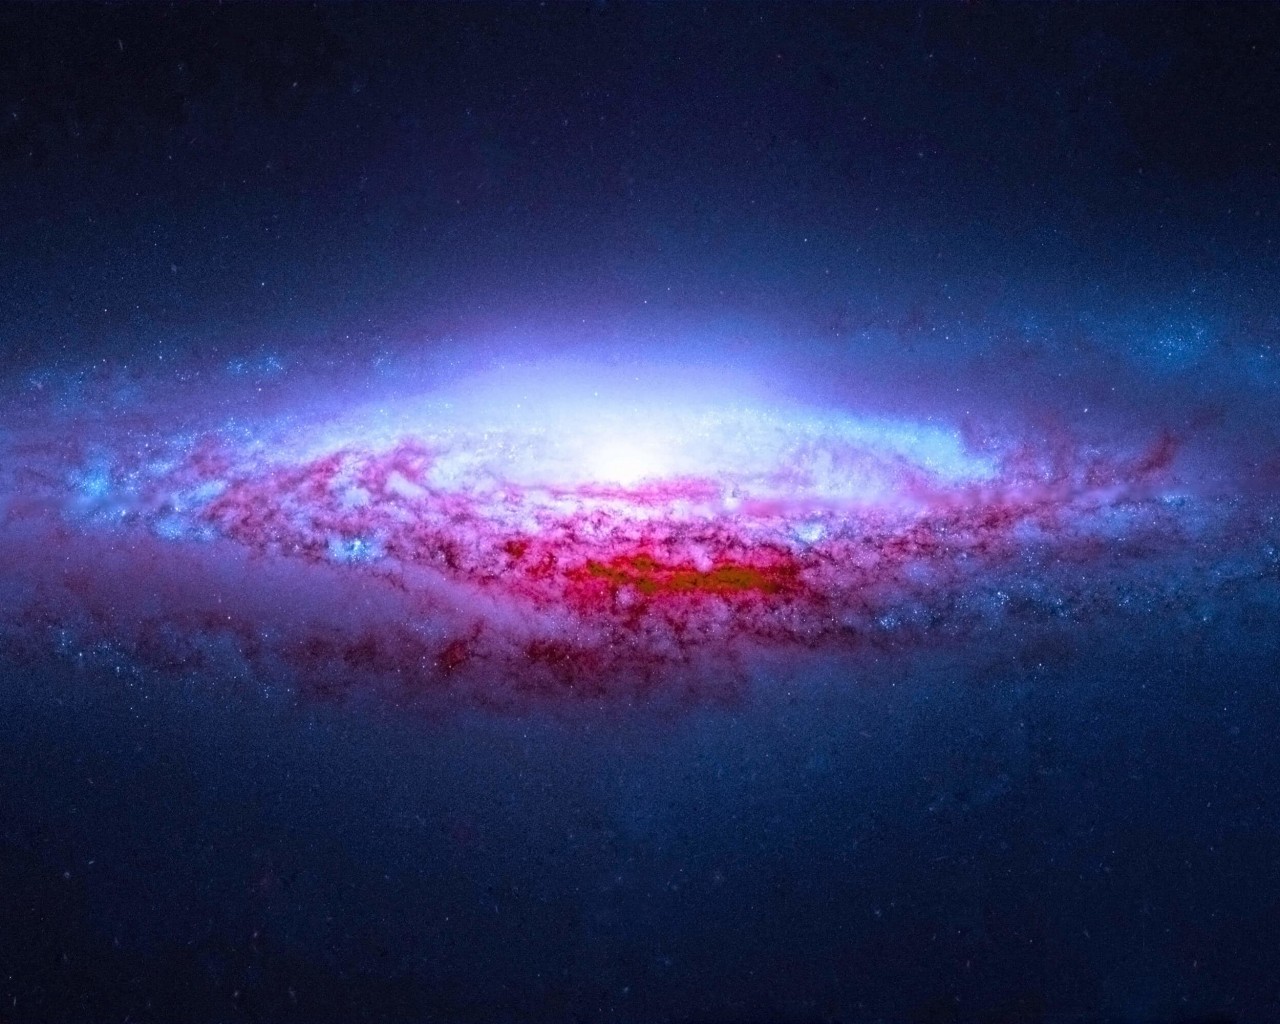 NGC 2683 Spiral Galaxy Wallpaper for Desktop 1280x1024